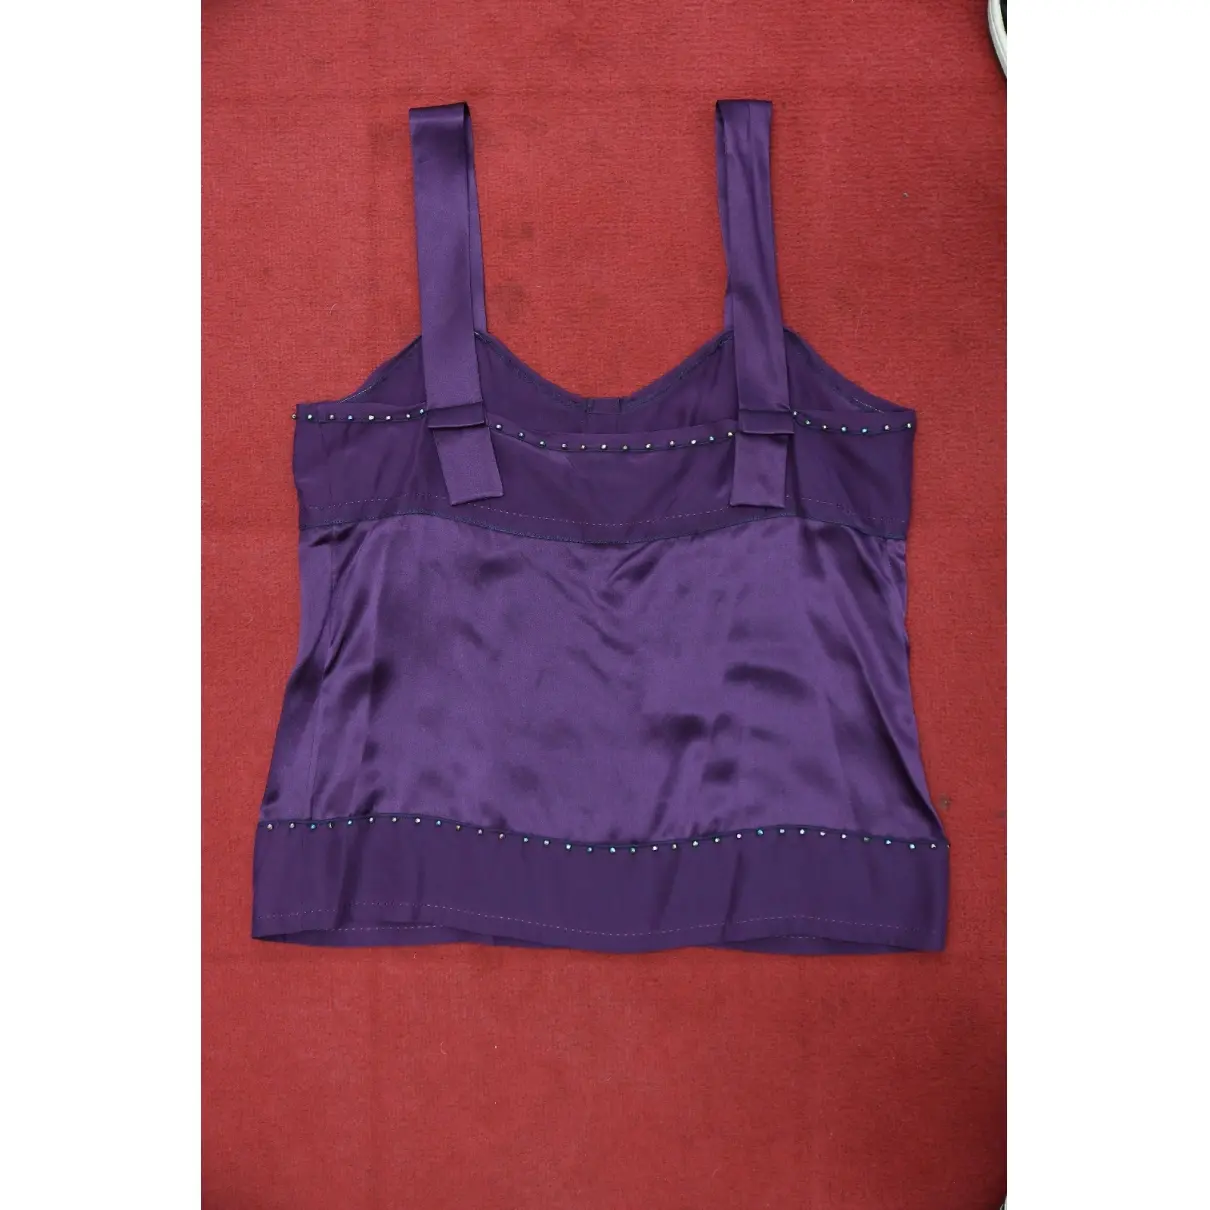 Diane Von Furstenberg Silk jersey top for sale